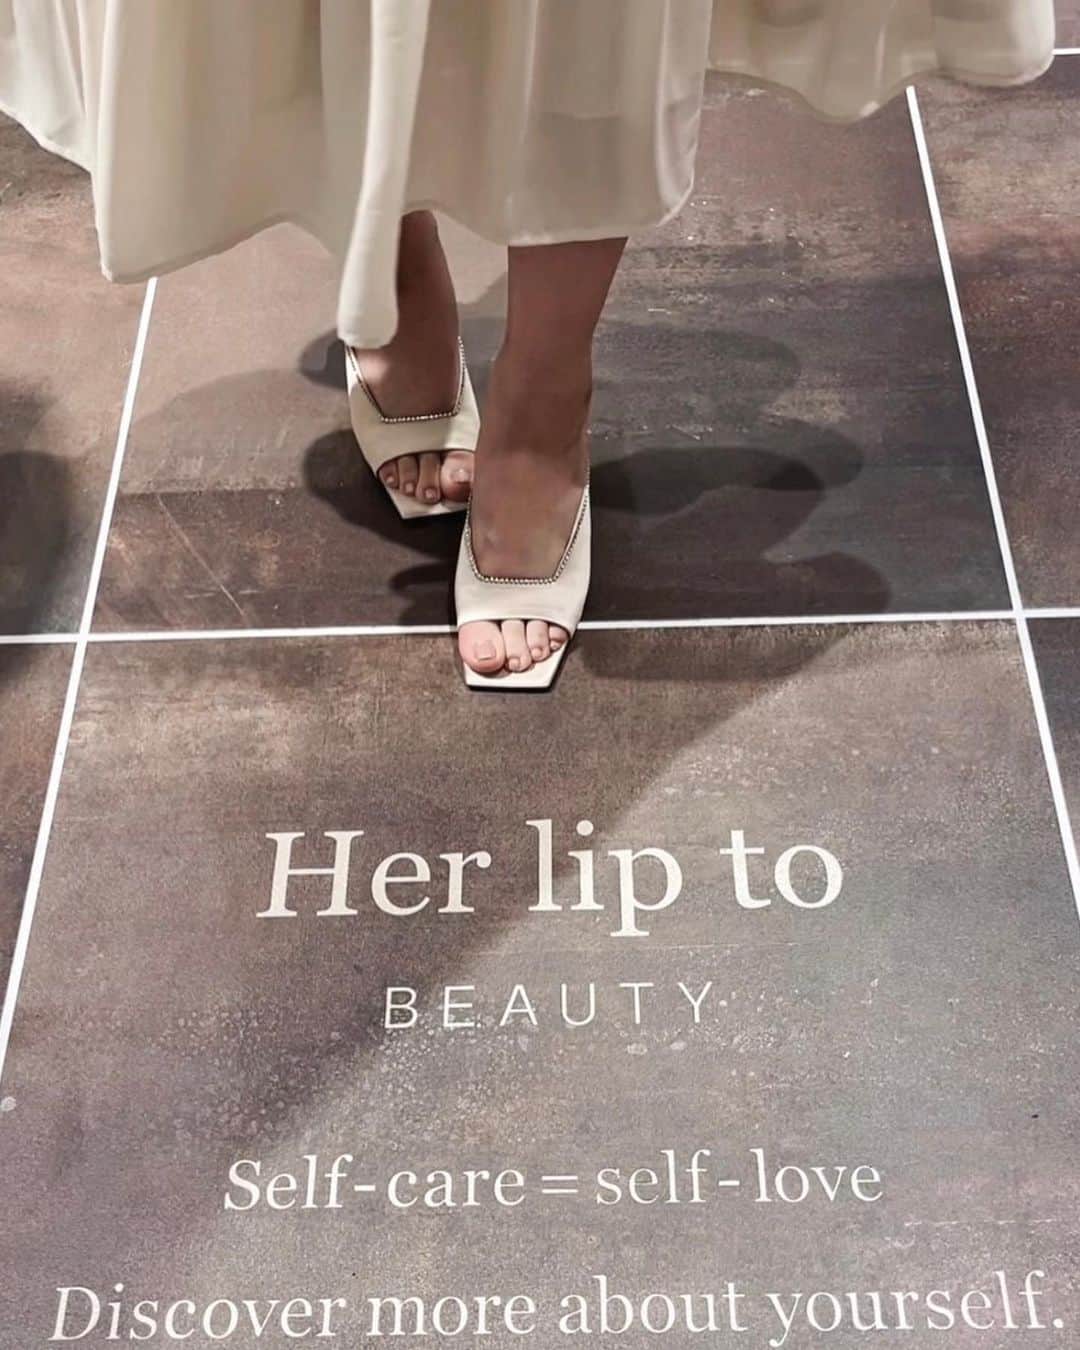 小嶋陽菜さんのインスタグラム写真 - (小嶋陽菜Instagram)「Her lip to BEAUTY初の旗艦店が 大阪にオープンしました🏛️🪞 いつも素敵な反応をいただく皆様のおかげです！ありがとうございます🤍  Her lip to BEAUTYは "Self Care = Self Love" をテーマにブランド作りをしてきました。 その想いがプロダクトからも空間からも感じられる場所になっているはず..✨  エクリュベージュで統一された 18世紀フランスの「Salon（サロン）」がテーマの店内。ブランドとお客様との社交場という意味も込められています😌🤝  語りきれない想いが詰まってる🤍 お店だけではなくブランドが発信する全てがそうなんだけど最近はお伝えする機会があまりなくて、、でも今日は新幹線で少し時間があるので書き出してみます  1, 足元にはブランドロゴとメッセージが🤍  2, Hの柱の前で✨  3,4 店内は“H”を模った柱や、細かい部分にこだわりを詰め込んだので楽しんでいただけたら嬉しいです！壁や什器を選ぶシーンなど、YouTubeのSummer Vlogを見てみて🎞️✨  5, Her lip to BEAUTYのフルラインナップが並び、テクスチャや香りをお試しいただけます💁‍♀️香りにこだわりがあるのはもうたくさんお話してきたので知ってもらっていると思うので割愛します笑、全5種類。自分自身を演出する、特別な存在になる香り🌹みんなは今どの気分？✨プレオープンから初日はディフューザーがとても人気でした👏  6,7 ショッパーやギフトボックスもこのお店のためのもの。自分へのギフトや大切な人にシェアする時に気分のあがるデザインに。 特にギフトボックスはお気に入りで、バッグのように持ち歩きたくなるデザイン。プレゼントで渡すシチュエーションを私たち大人が数人で渡し合ったり、渡すシーンを演じてイメージしてみたり😂「お誕生日おめでとう！これプレゼント！」とか何回もやってみた笑。デザイン、カラー、素材、大きさを何回も調整して完成したの✨特にカラーは最後の最後まで悩んだ🥺Herliptoで使う絶妙なピンクって伝えるのも色出しも本当に難しいの😫ピンクが好きで大人だからこそ、そこにこだわってる✊パントーンで色番号を指定してください！って言われてもパントーンにはなかなかないの。オフィスで見て、照明の雰囲気のあるご飯屋さんで見て、それでも決められないから私の家で見て笑。そんな風に作った思い入れのあるアイテム。  8, 制服も初めて作りました✨Herliptoのドレスにするかすごく悩んだんだけど、BEAUTYのお店で制服のドレスがあったら素敵だなと思って。お客様はもちろん、働くスタッフにとってもときめく場所になるように。みんなすごく可愛かった！　　　　　　　　  9, ビューティジャーナル📖こちらはHerliptoで好評で、このジャーナルをきっかけにブランドを知った、好きになった！と言う方が実は多いアイテム。自分自身の思考や行動を振り返り幸せを感じる瞬間が増えていくことをサポートするノート。ファブリックにゴールドの箔押しで見た目も可愛い。私も枕元に置いていて朝クリアな状態で書き込んだりしています..✒️Self Loveの習慣が1人でも多くの方に届きますように..🫶 オープン記念ノベルティは、 柱をイメージしたPILIER(ピリエ)のHロゴが入ったツイードトートバッグ。表面感のある素材だからあえてシンプルに🩷  10, 限定アイテムのミラー🪞 Herliptoの定番でもあるローズカラーの大理石を使ったスタンドミラー。 アーチのミラーにブランドらしいリップのシェイプ。トレイ部分にジュエリーを置いたりインテリアとしても素敵でモダンな印象にしてくれます。インテリア好き&ストーン大好きな私としては、こんなに可愛いミラーは他にないと思ってる！！ぜひみんなのお部屋に置いてほしい✨これはなんと言ったら良いかわからないのですが、Herliptoのストーンアイテムはかなりお買得です..🤫素敵なものを手に取りやすい形でシェアできたら良いな!と言う想い、、これは全体を通してあるテーマですが、ストーンアイテムは特に。ストーン好きな人わかってもらえるはず🌟 リップのシェイプも、リップ！にならないようにアートなデザイン。今日お客様に「このリップの形が気に入っていて、猫に見えるから🐈」って言っていただいて、たしかに！横を向いて座ってる猫にも見えなくもない！そういうの素敵って思った❤️  と、まだまだありそうだけど初日だしこんなかんじ😼？9月からLOFTで展開が始まったり、アットコスメに置いてもらったり、今は六本木の蔦屋書店と二子玉川の蔦屋家電でも小さなポップアップをやっていたり！手に取っていただく機会も増えて、毎日嬉しい反応をたくさんいただいています🙇‍♂️✨使っていただいた皆さんの毎日が豊かになるように、想いを込めて発信していきます。  本日オープンした旗艦店。 初日から時間を作ってご来場いただいた皆様、ありがとうございます🙇 ブランドらしさが詰まったときめきを感じる特別な空間となっています✨ぜひ足を運んでください。最後まで読んでいただき、ありがとうございます😼❤️‍🔥」9月20日 23時35分 - nyanchan22